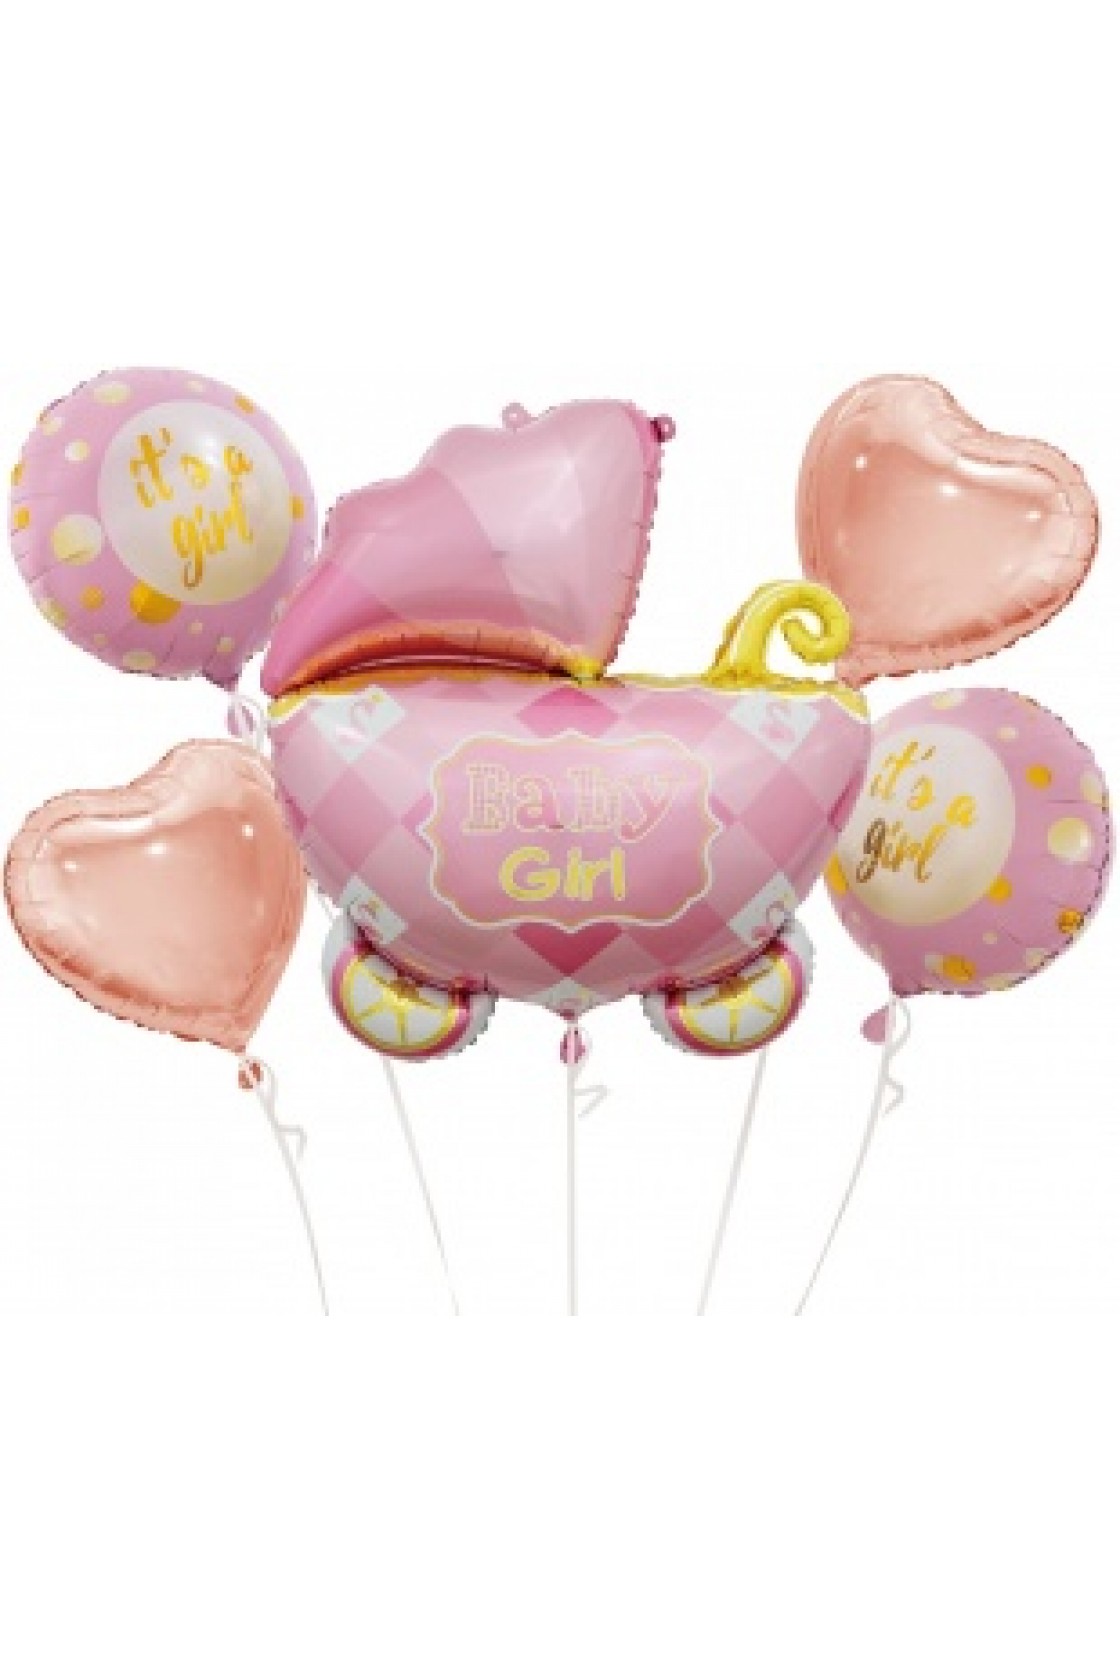 Композиция из воздушных шаров и коробки сюрприз на День рождения для девушки.